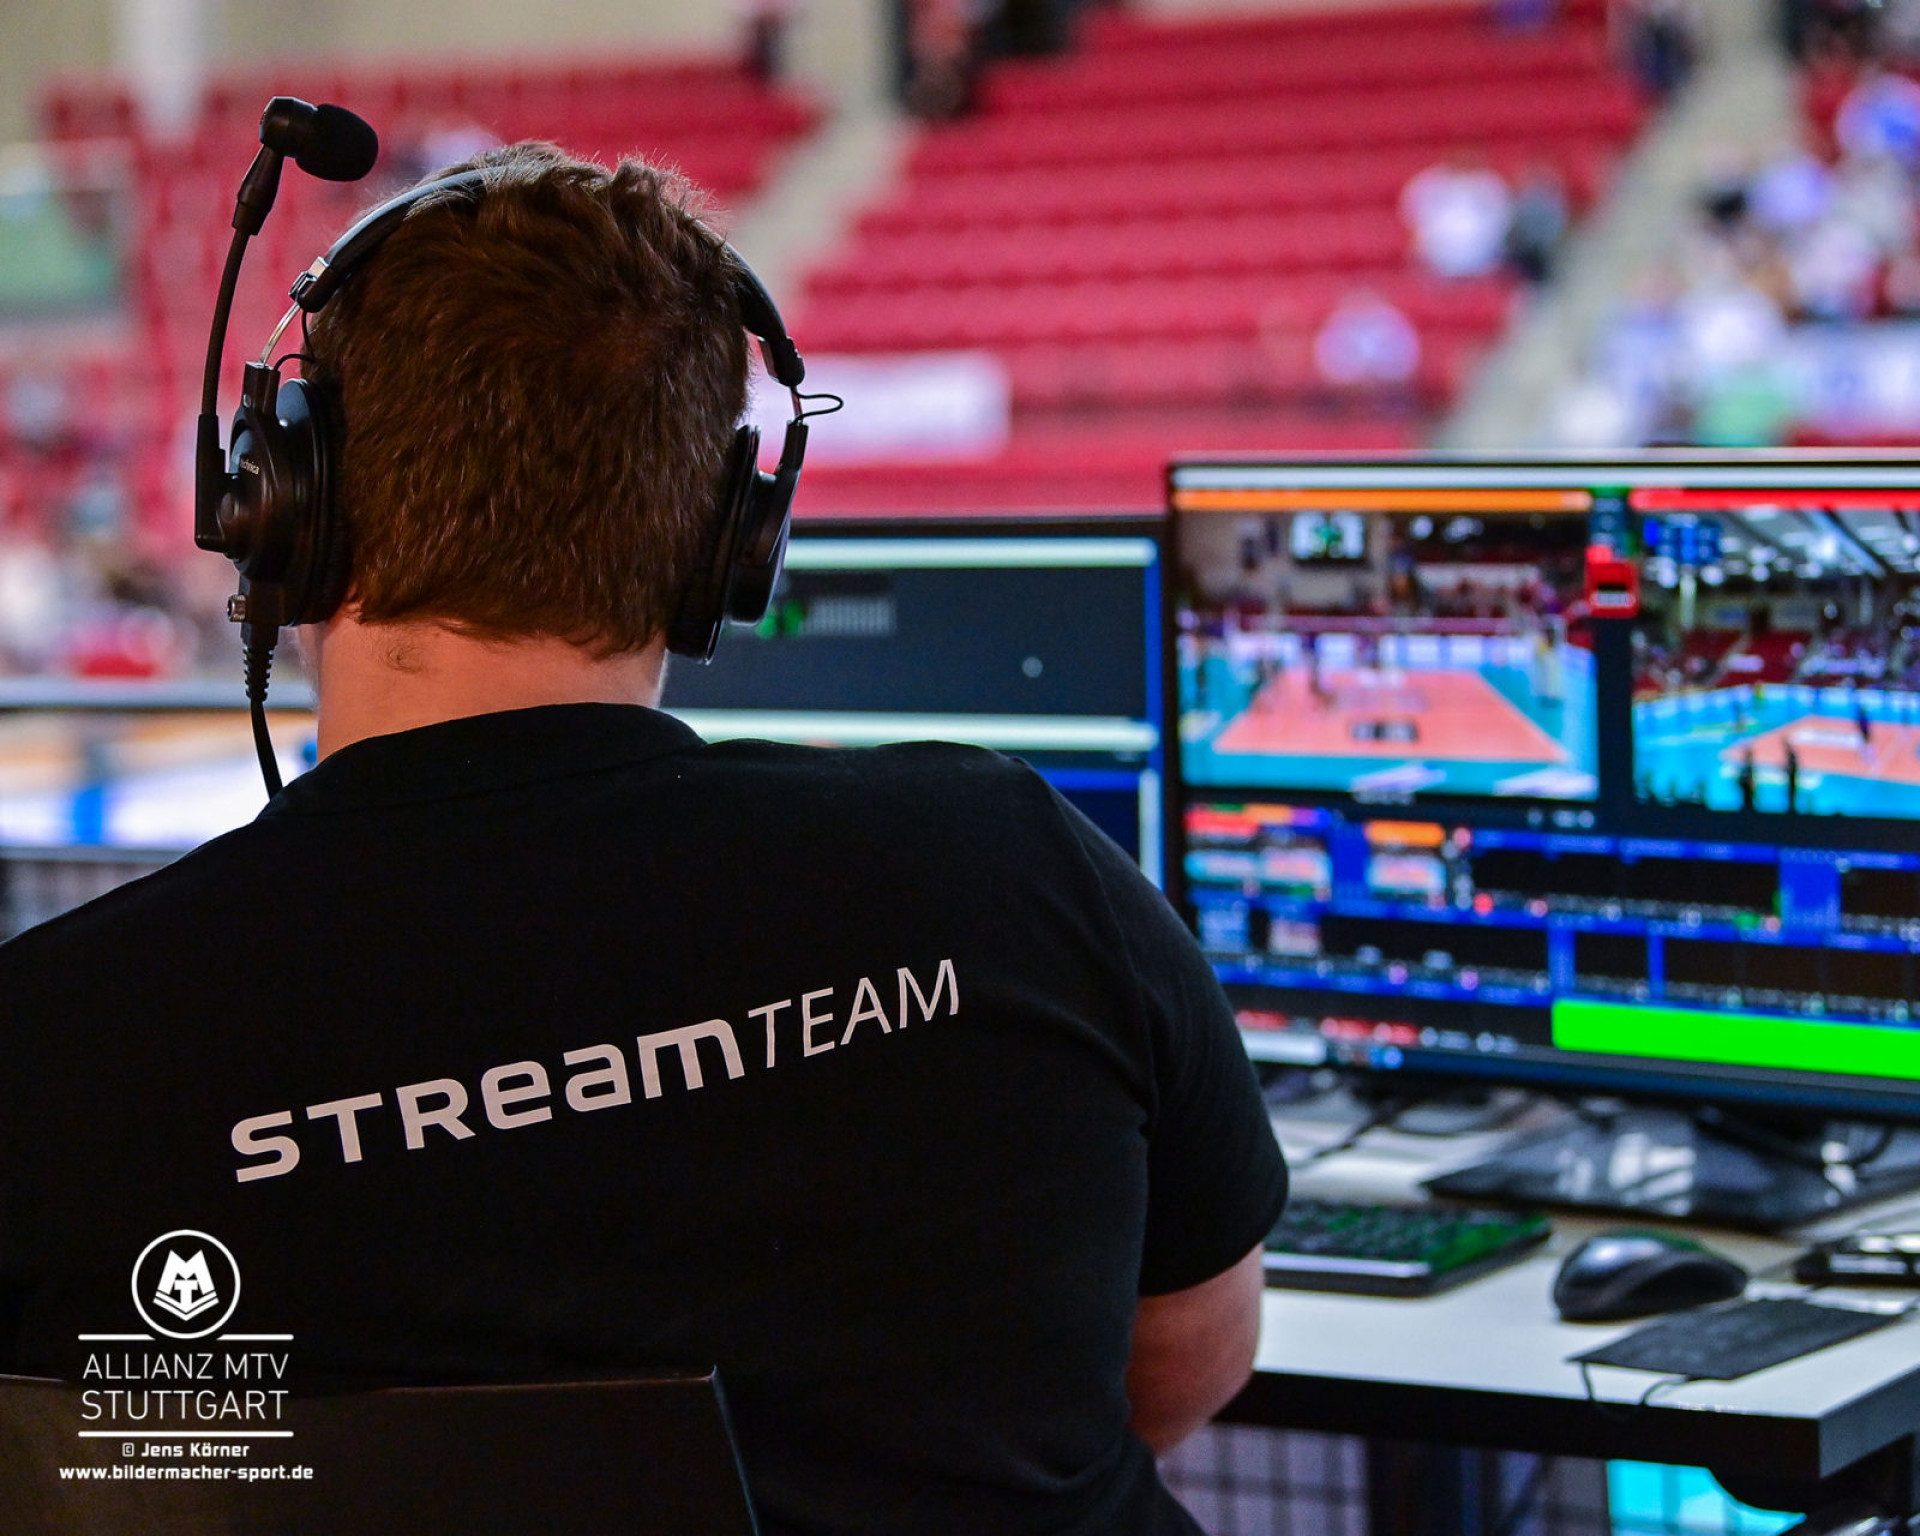 Erfolgreicher Start Streaming-Plattform SPORT1 Extra überzeugt immer mehr Fans der Volleyball Bundesliga der Frauen